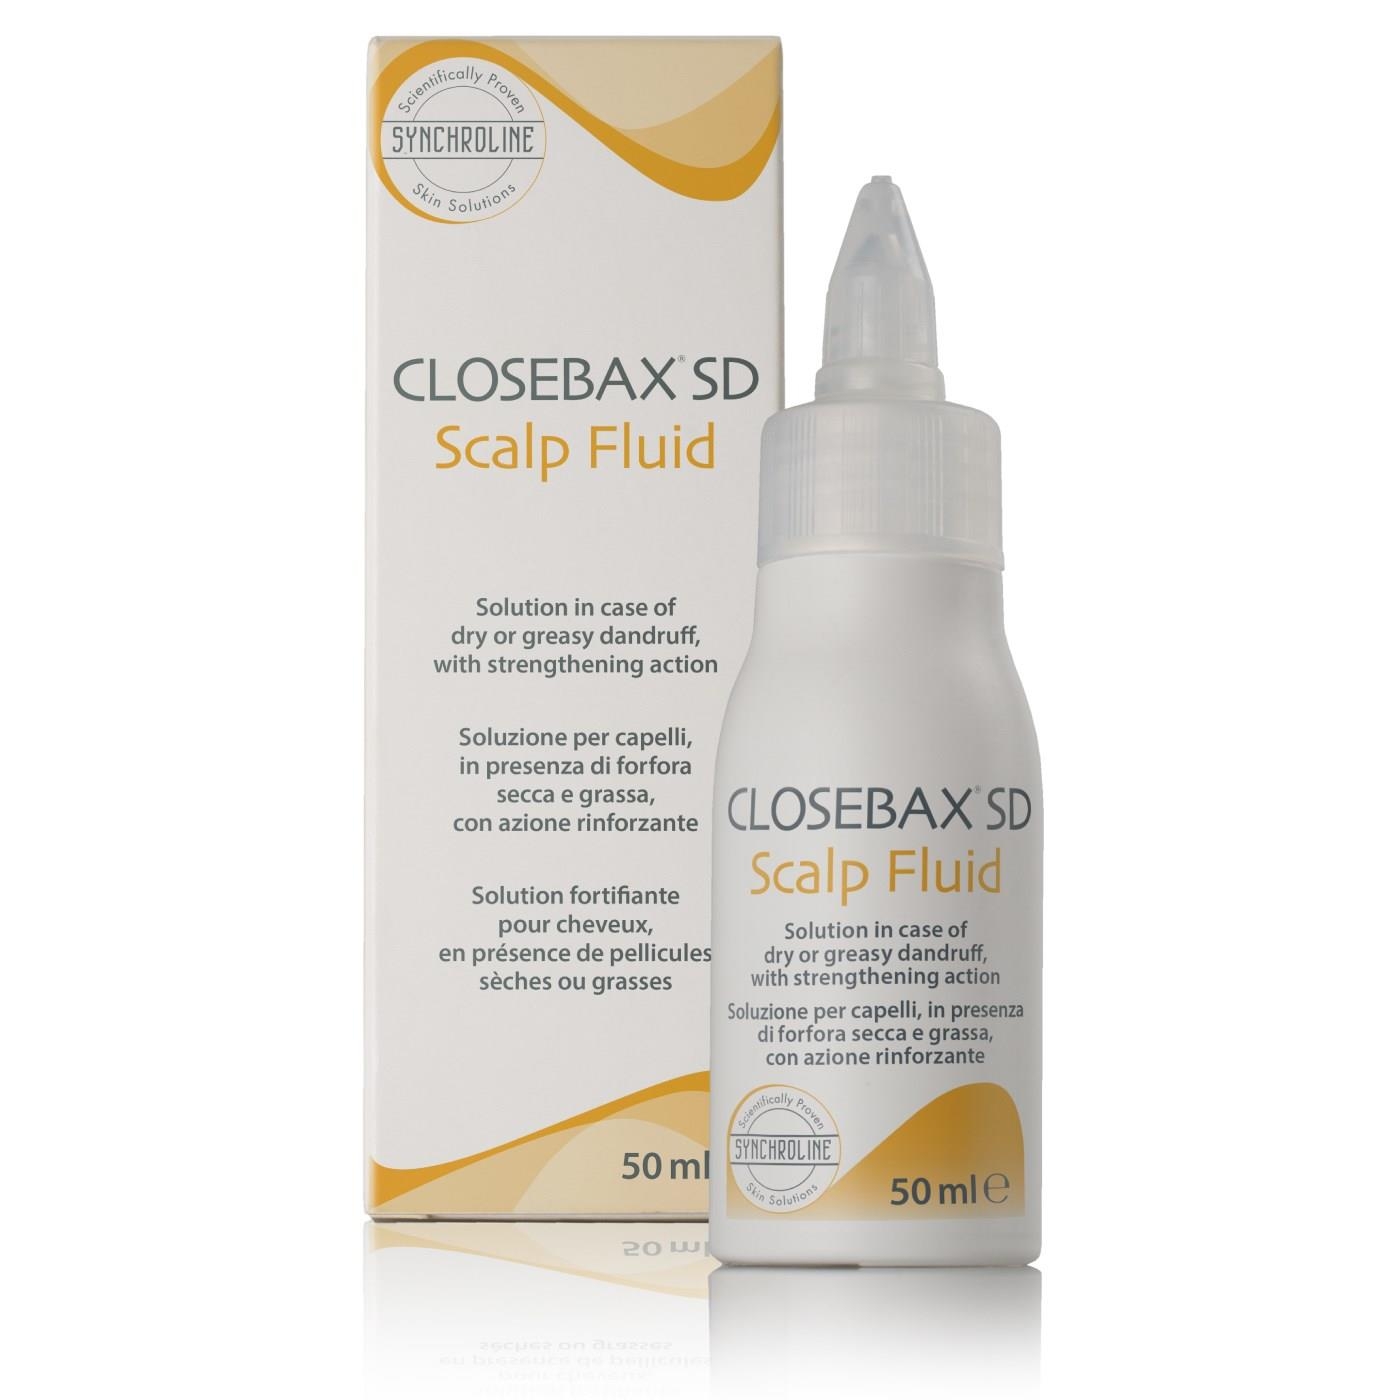 Synchroline Closebax SD Scalp Fluid 50 Ml - 1